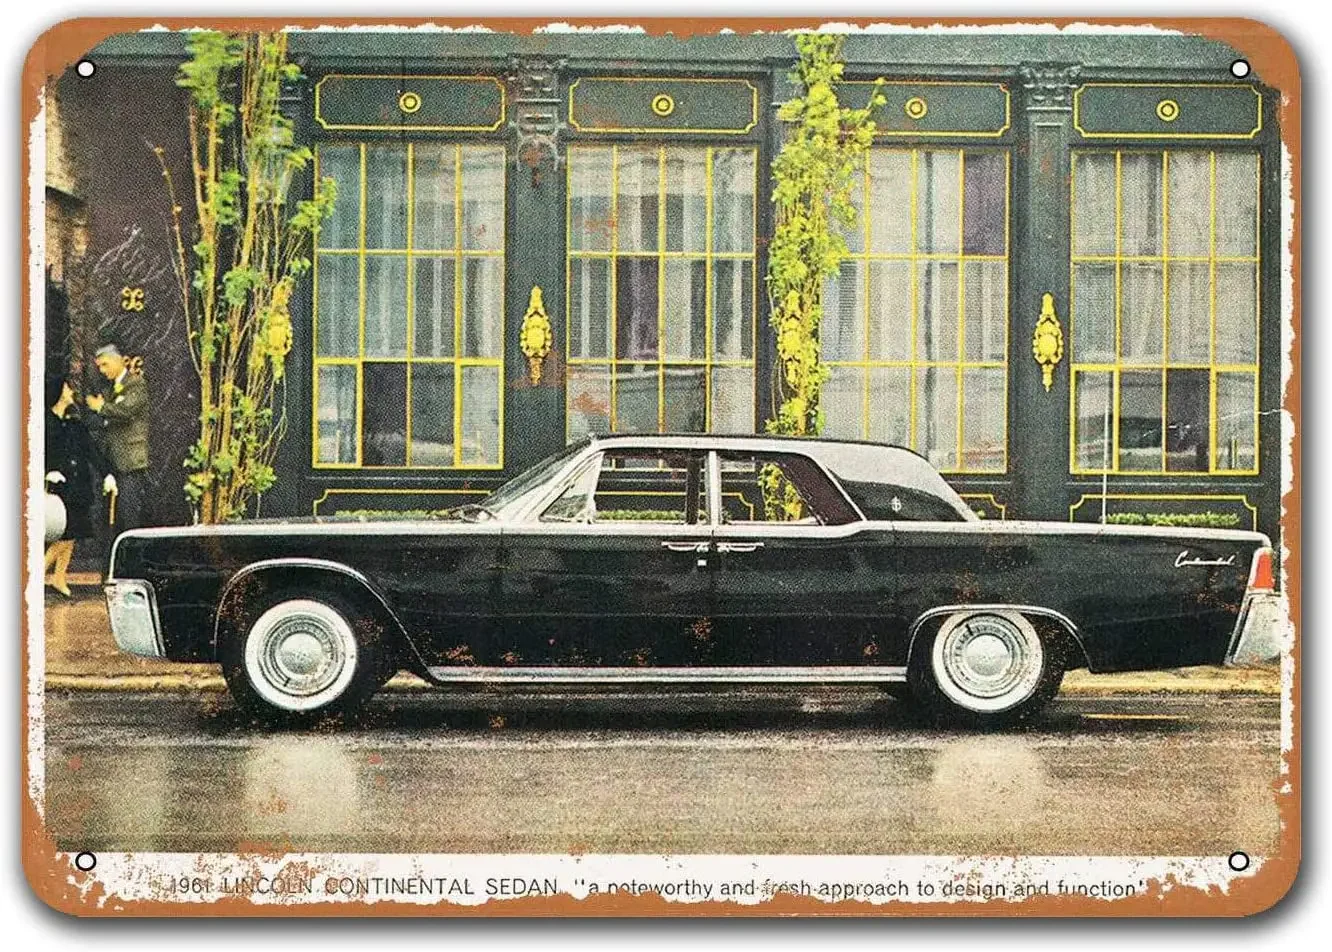 

1961 Lincoln Continental автомобиль жестяные знаки винтажные, Sisoso металлические таблички постер гараж мужская пещера Ретро Декор стен 16x12 дюймов